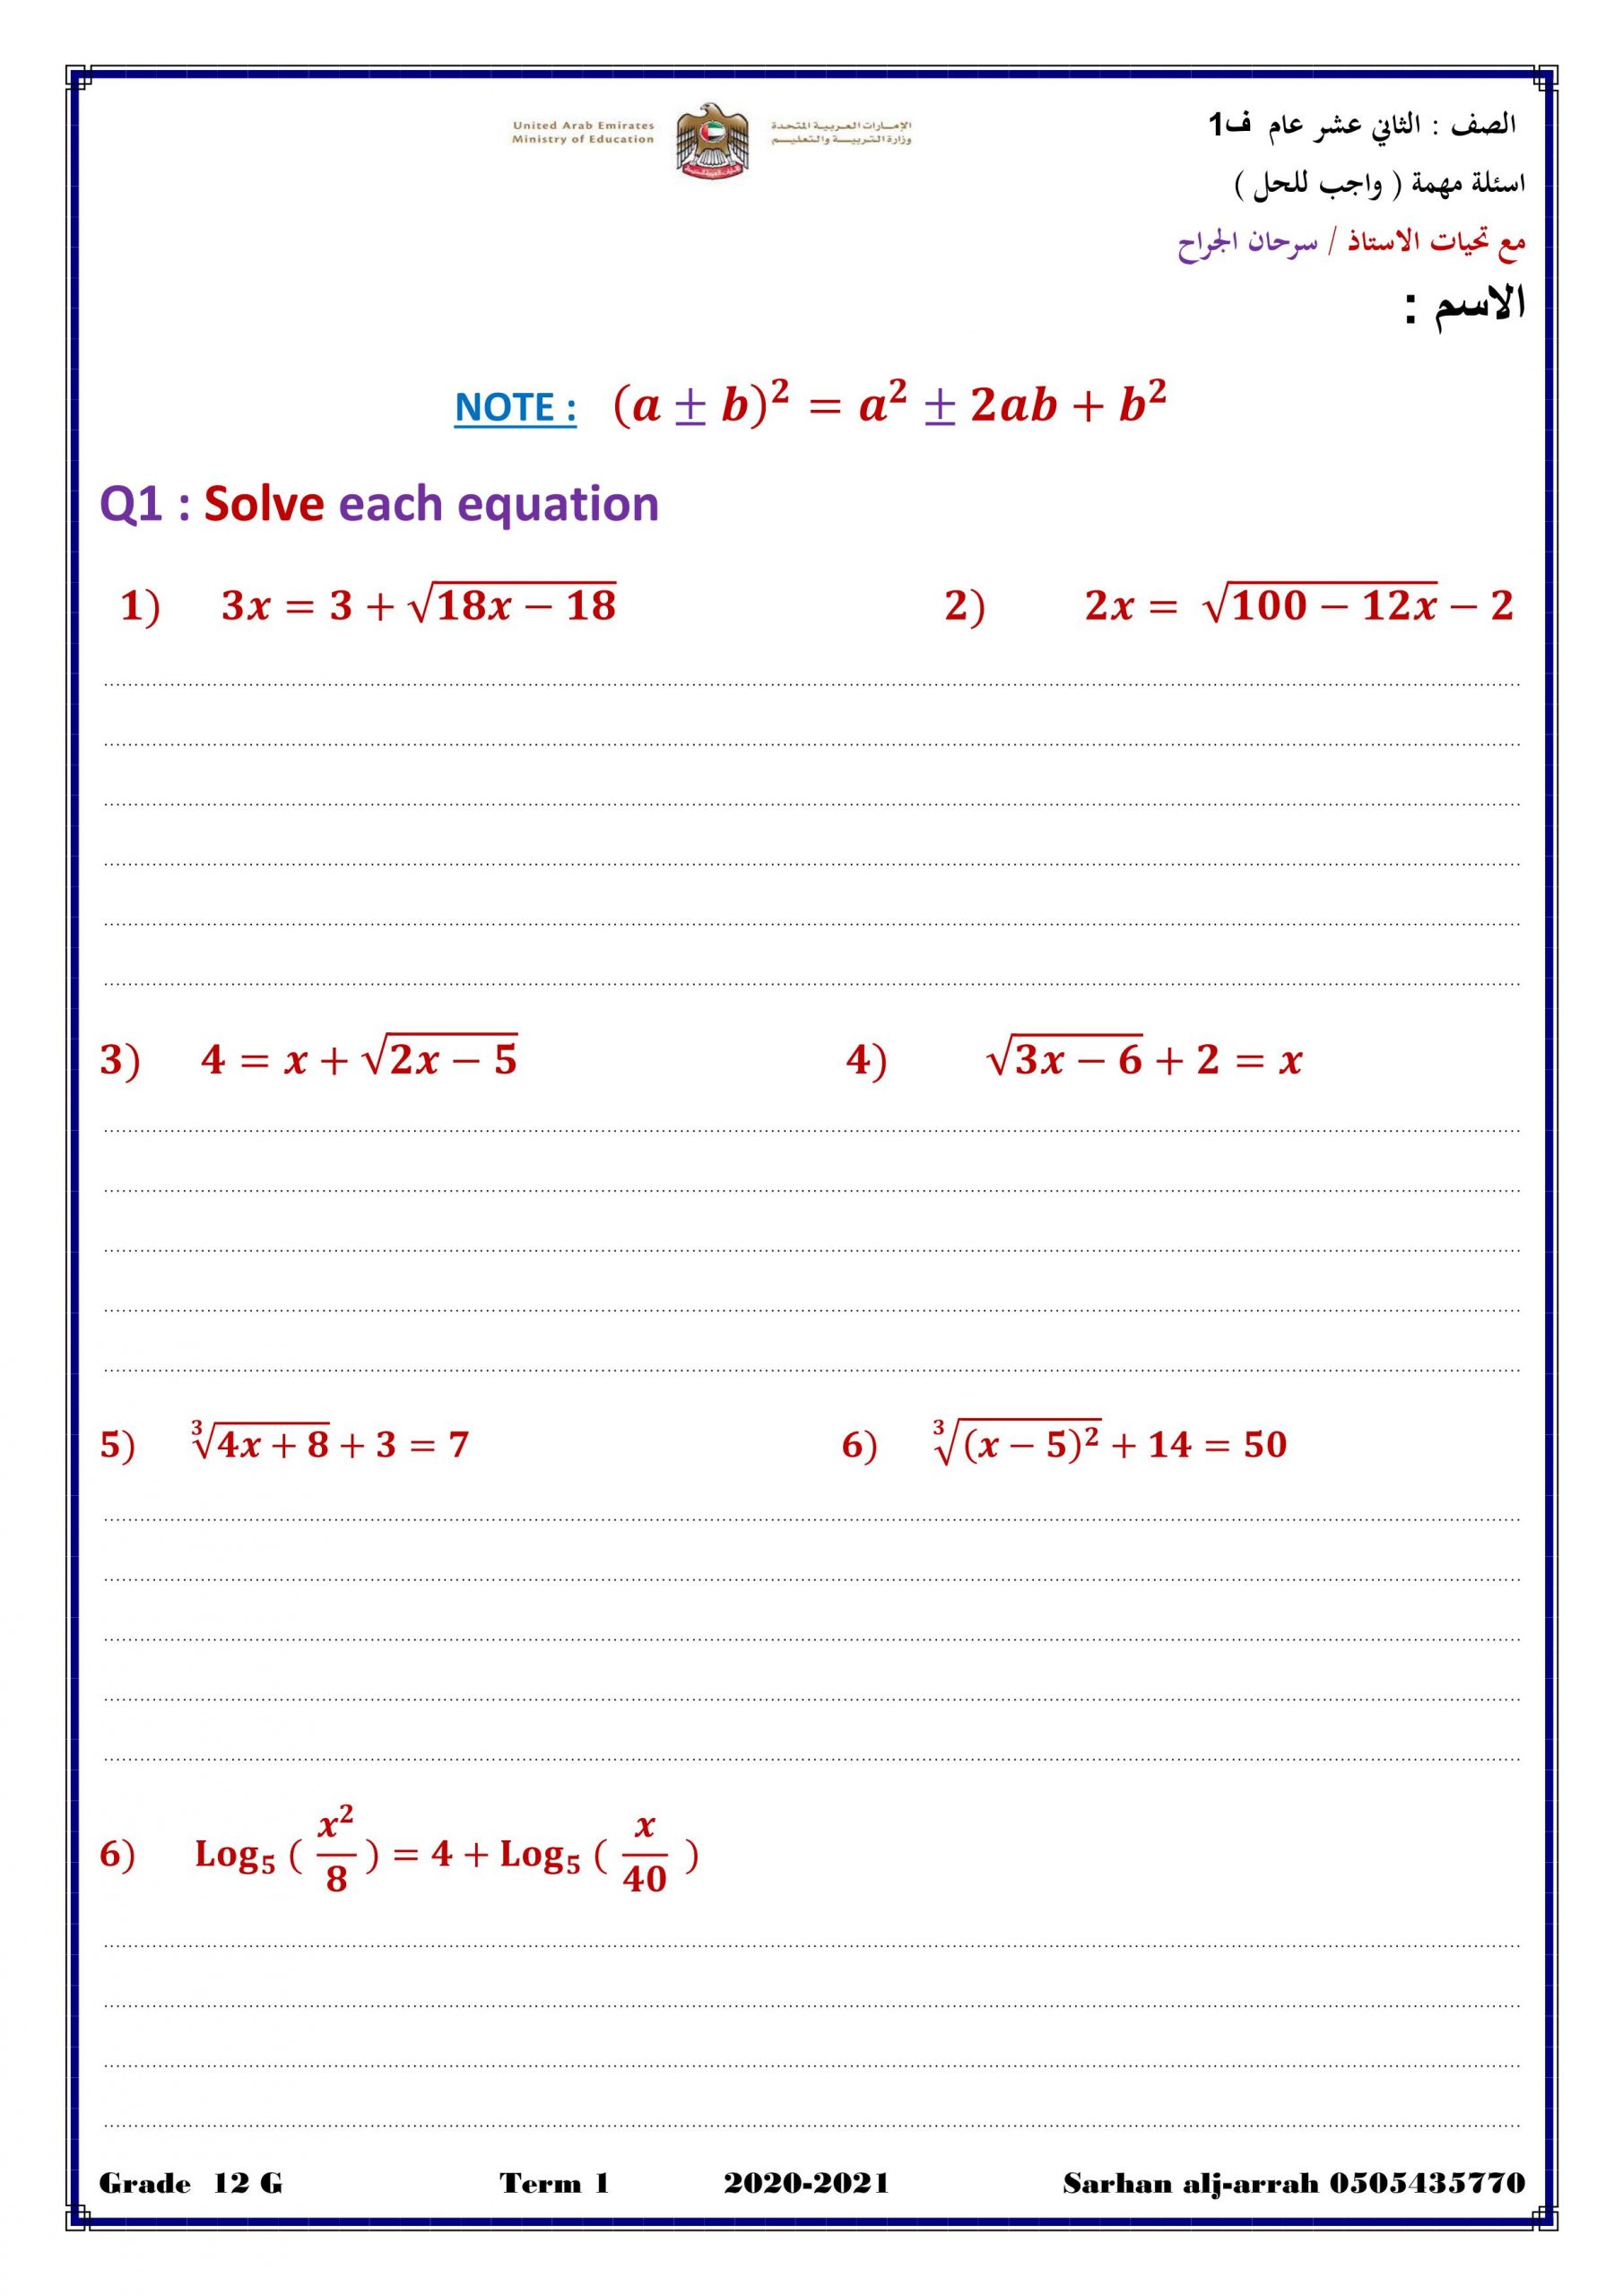 اوراق عمل مراجعة بالانجليزي الصف الثاني عشر عام مادة الرياضيات المتكاملة